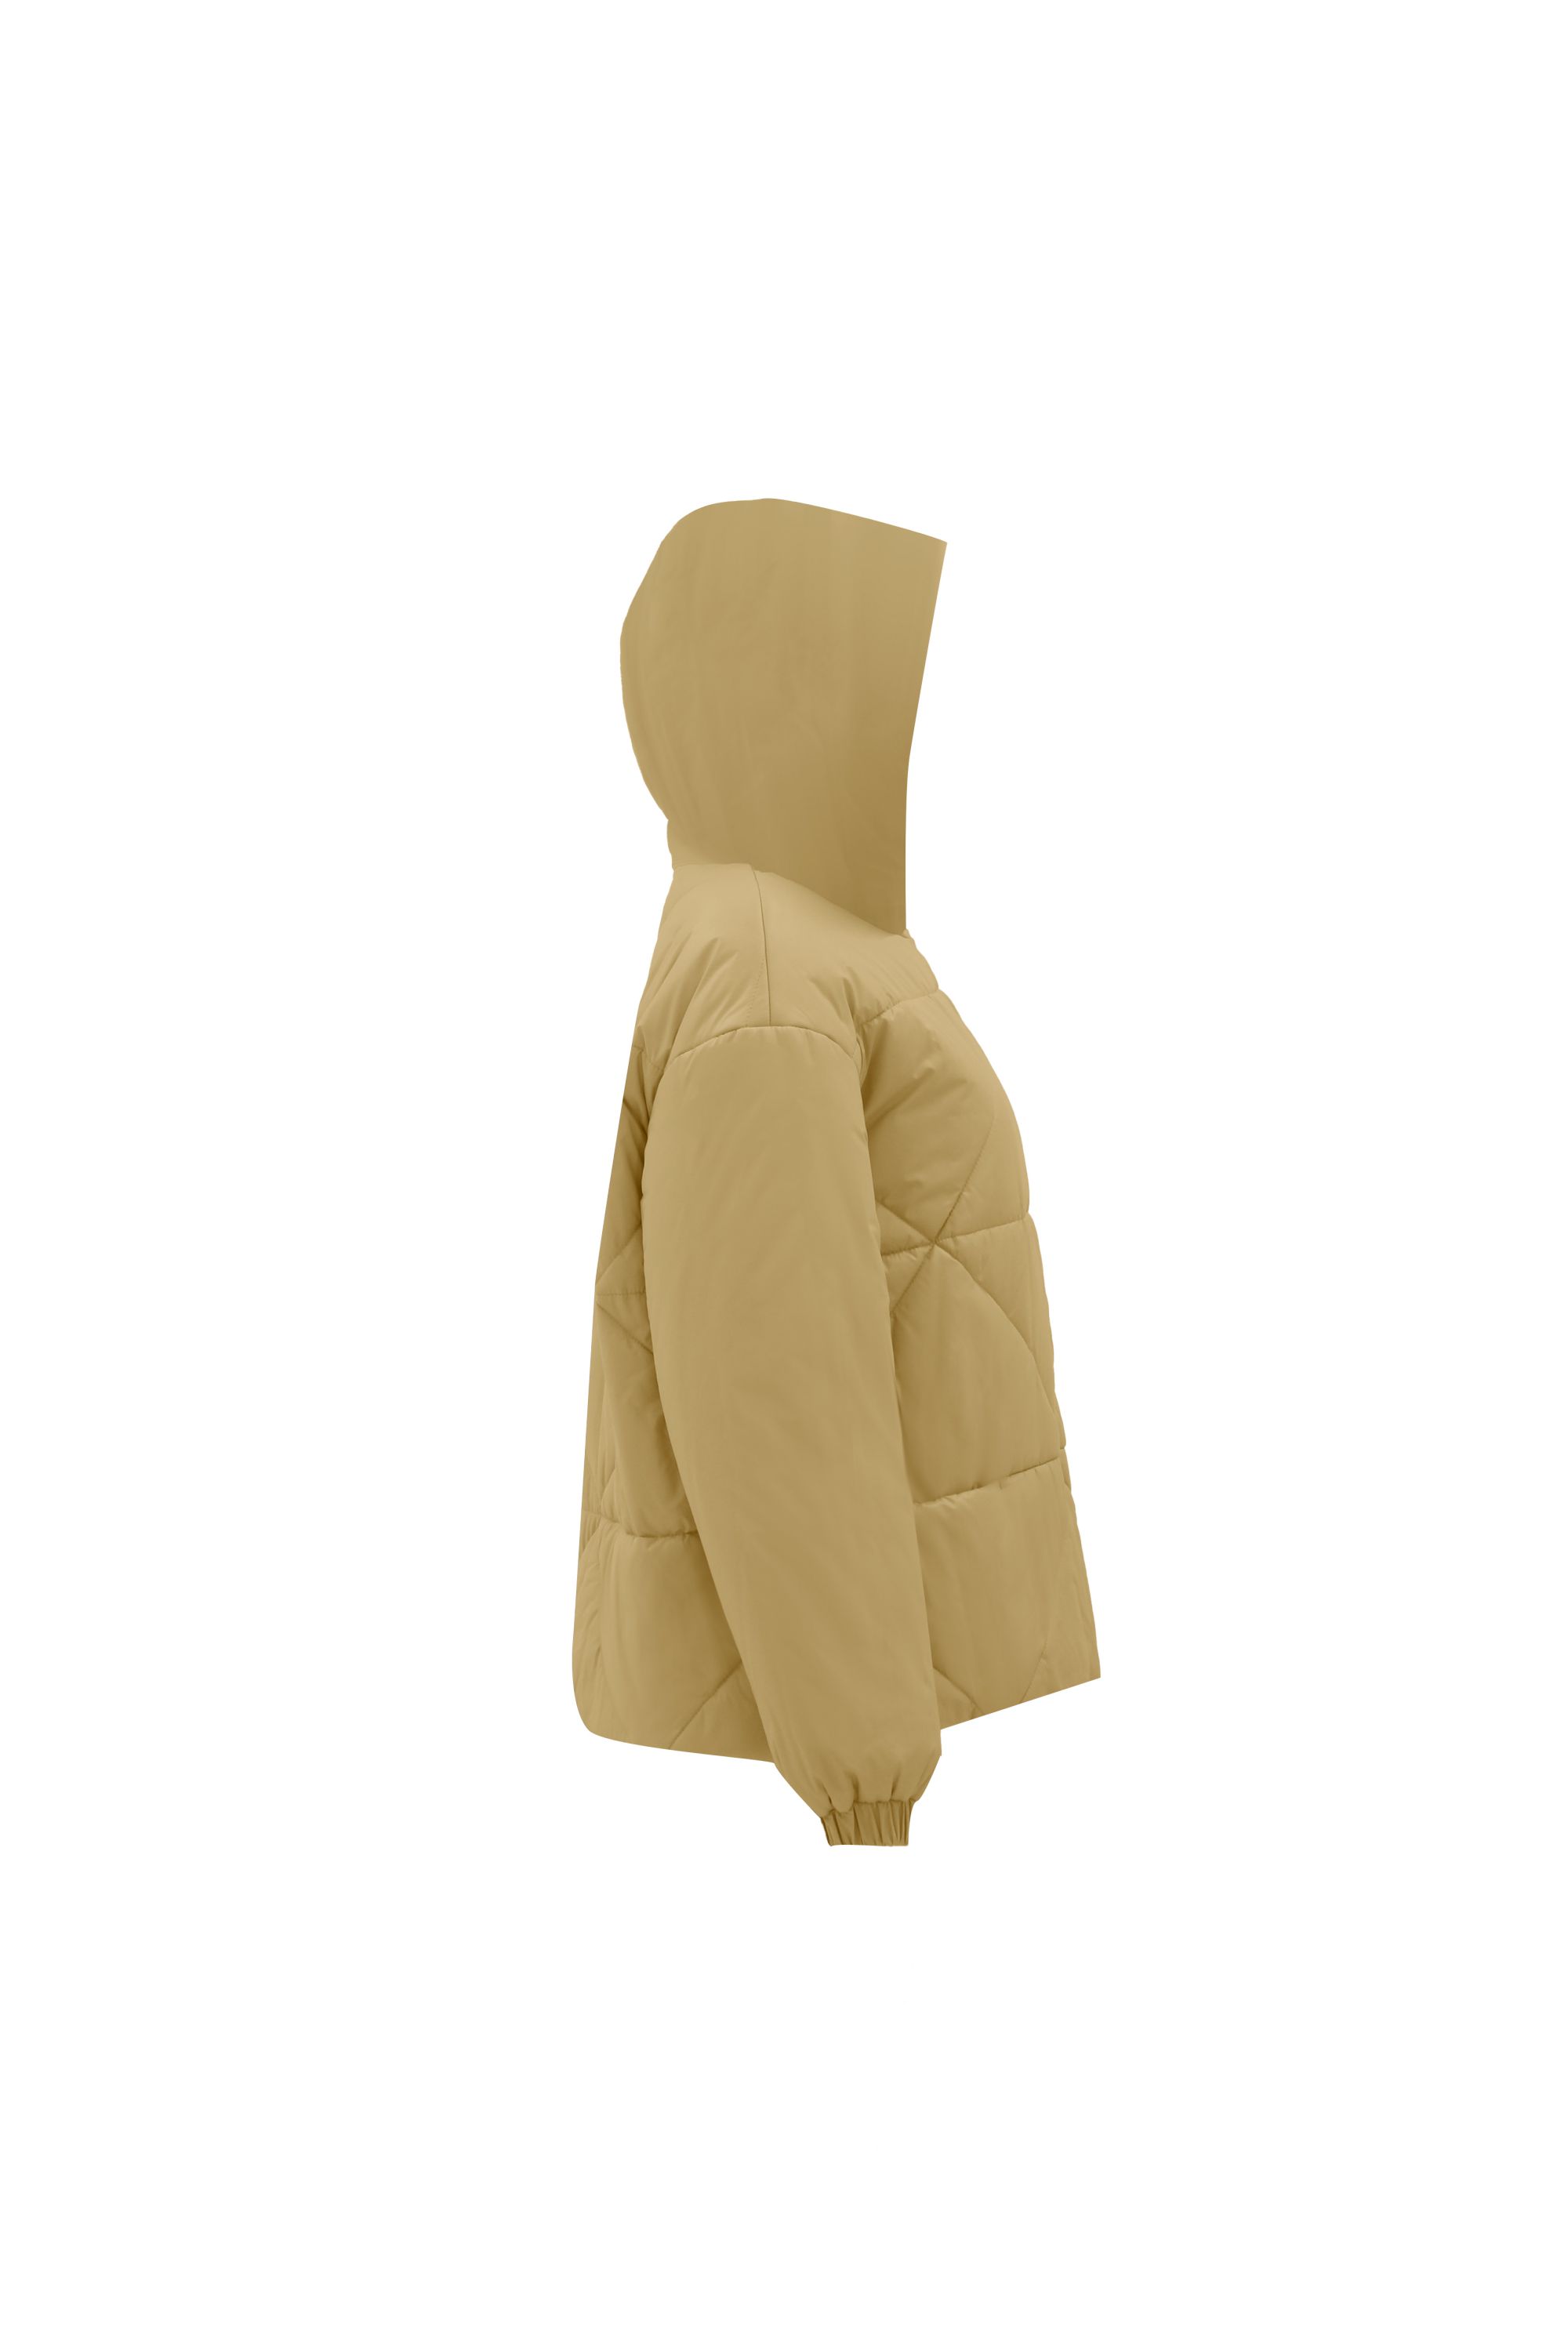 Куртка женская плащевая утепленная 4-12065-1